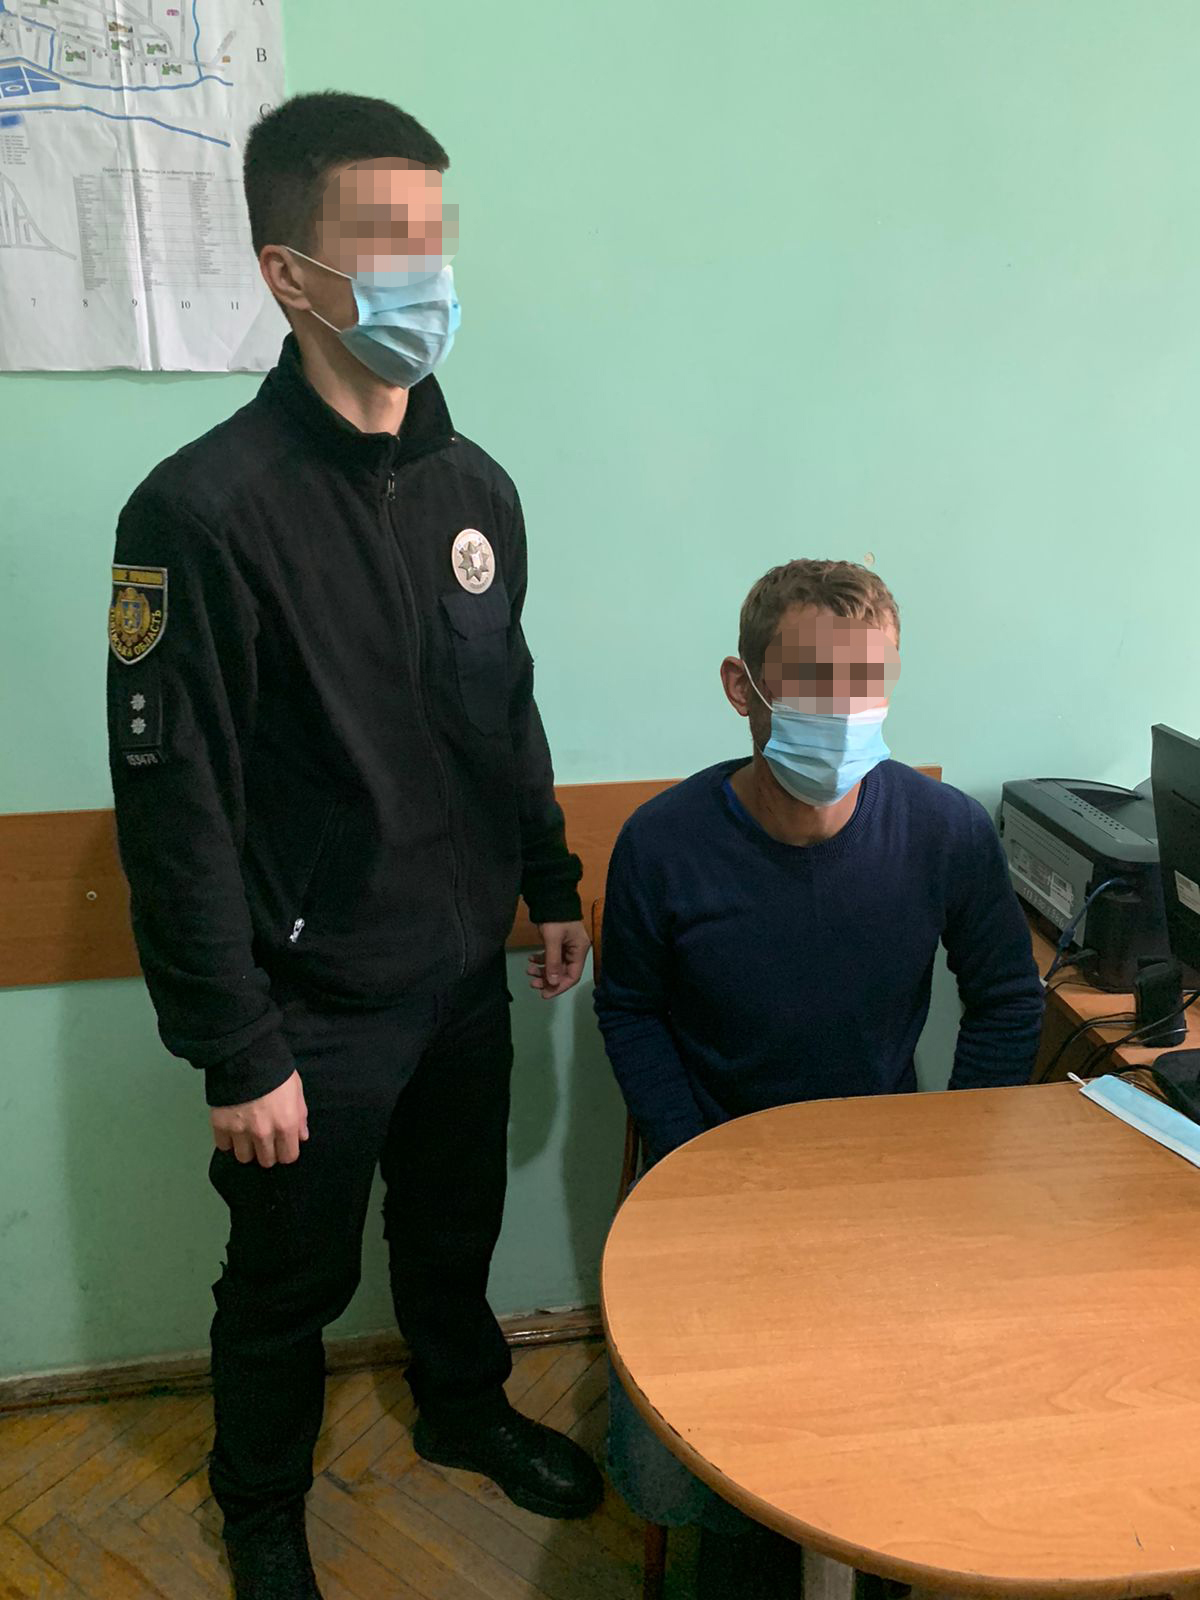 При совершении преступлений задержанный, 26-летний житель Запорожской области, находился в состоянии наркотического опьянения.